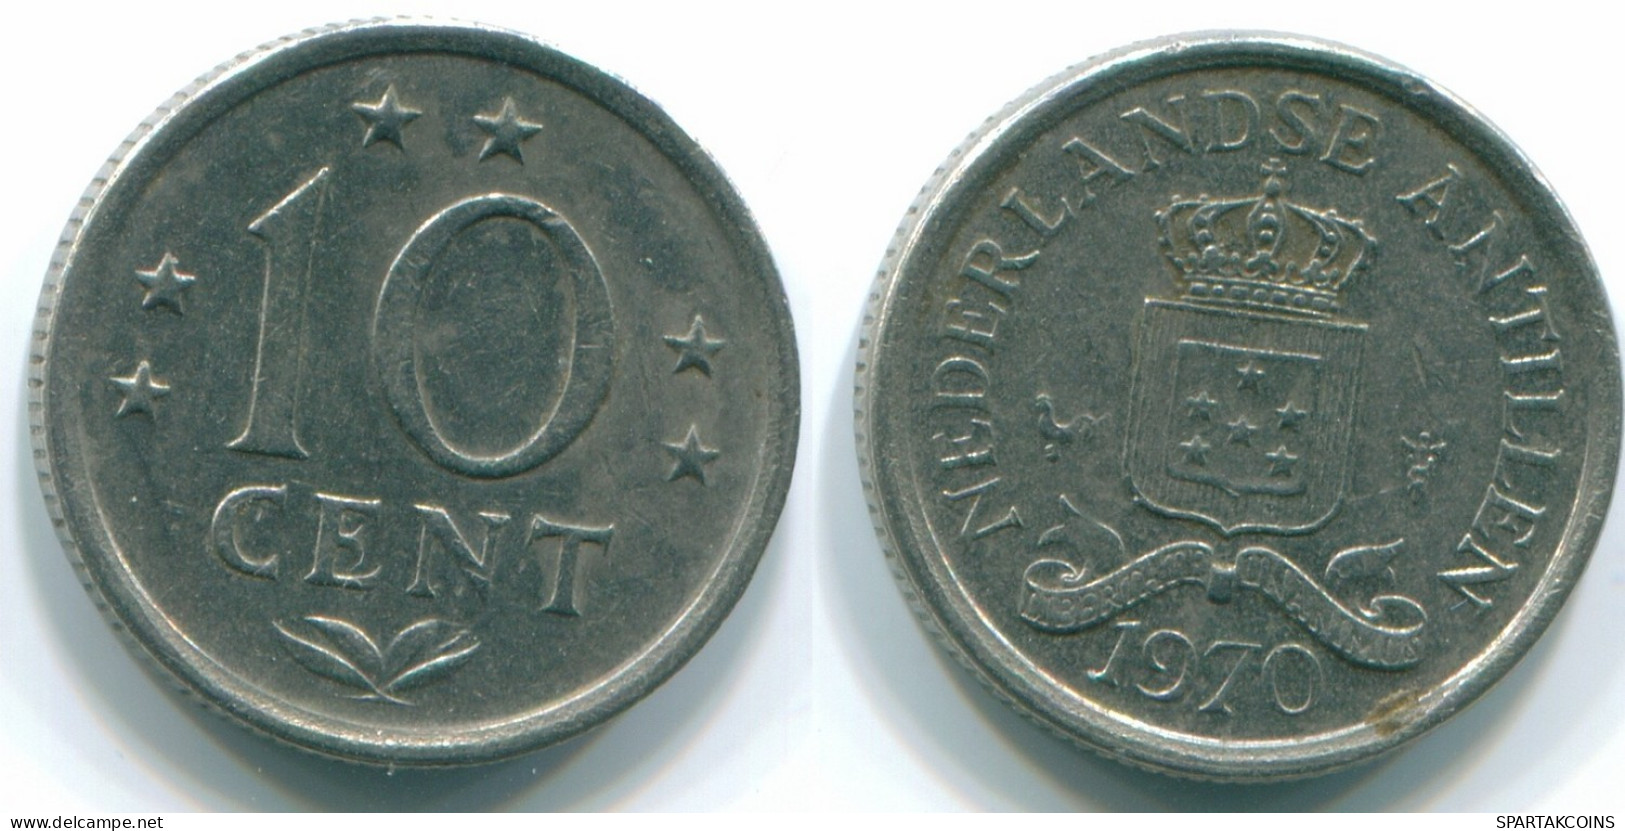 10 CENTS 1970 NETHERLANDS ANTILLES Nickel Colonial Coin #S13327.U.A - Niederländische Antillen